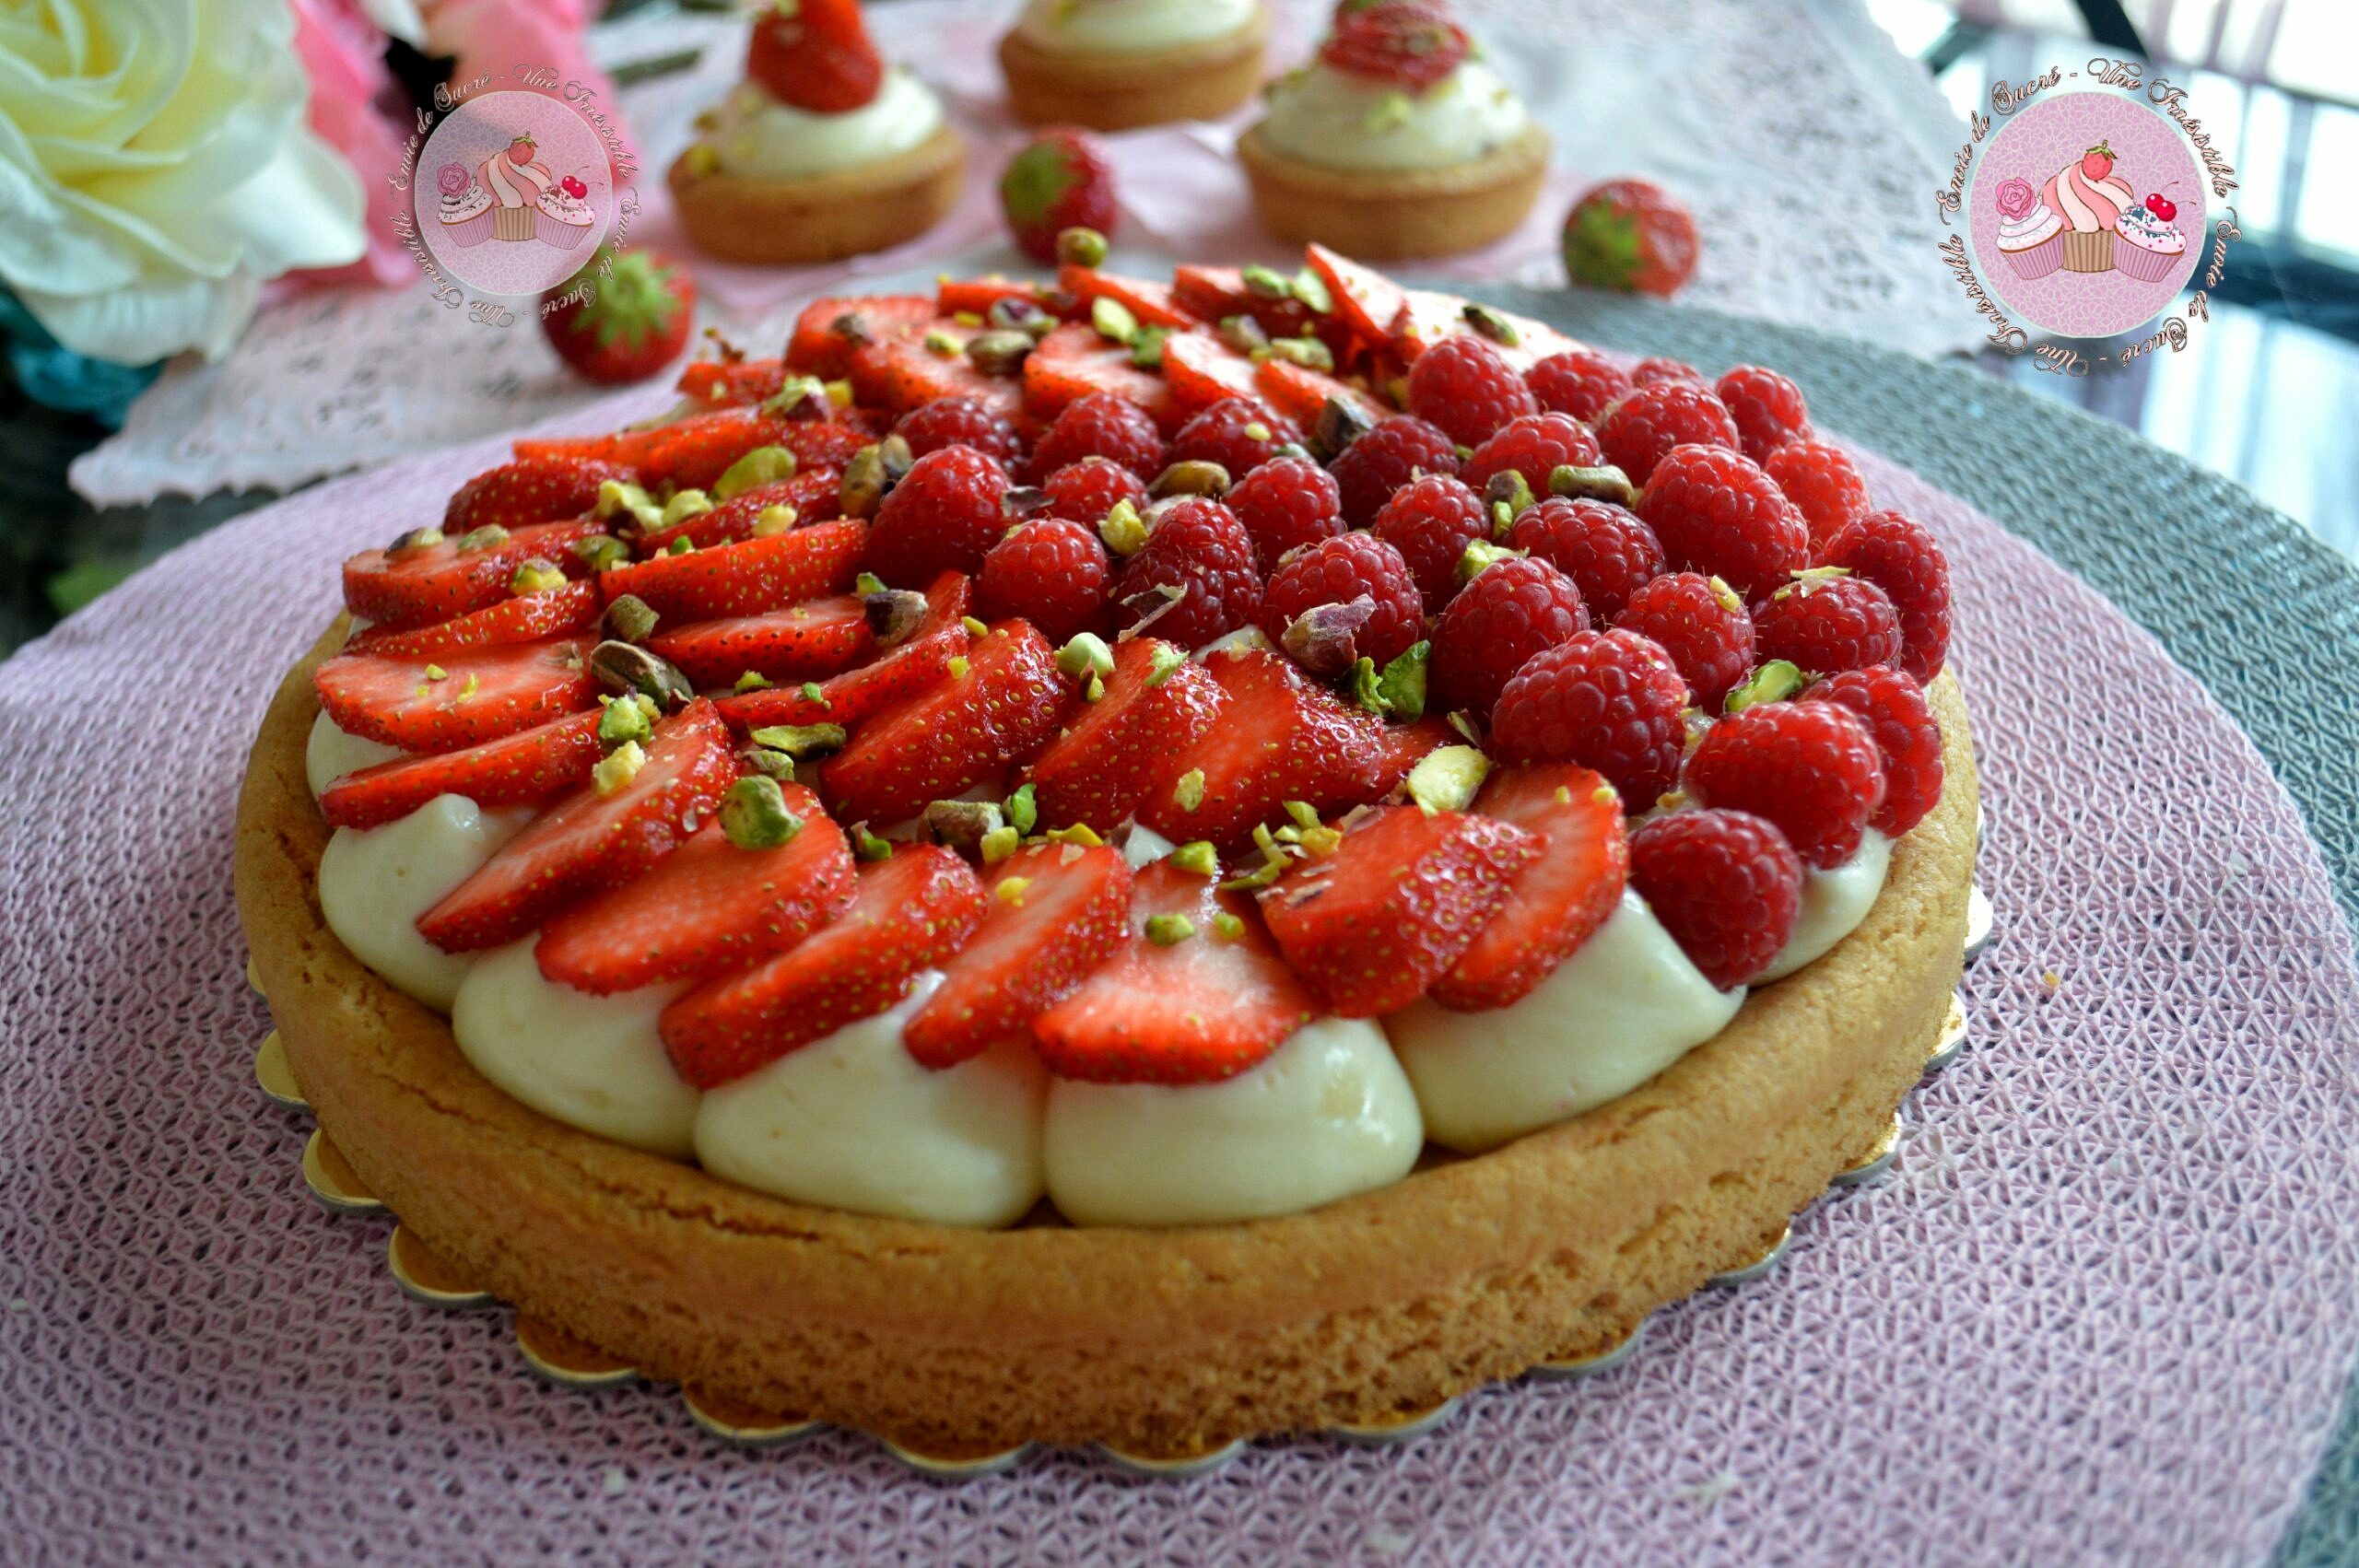 Strawberry Shortcake Aux Fraises Le Meilleur